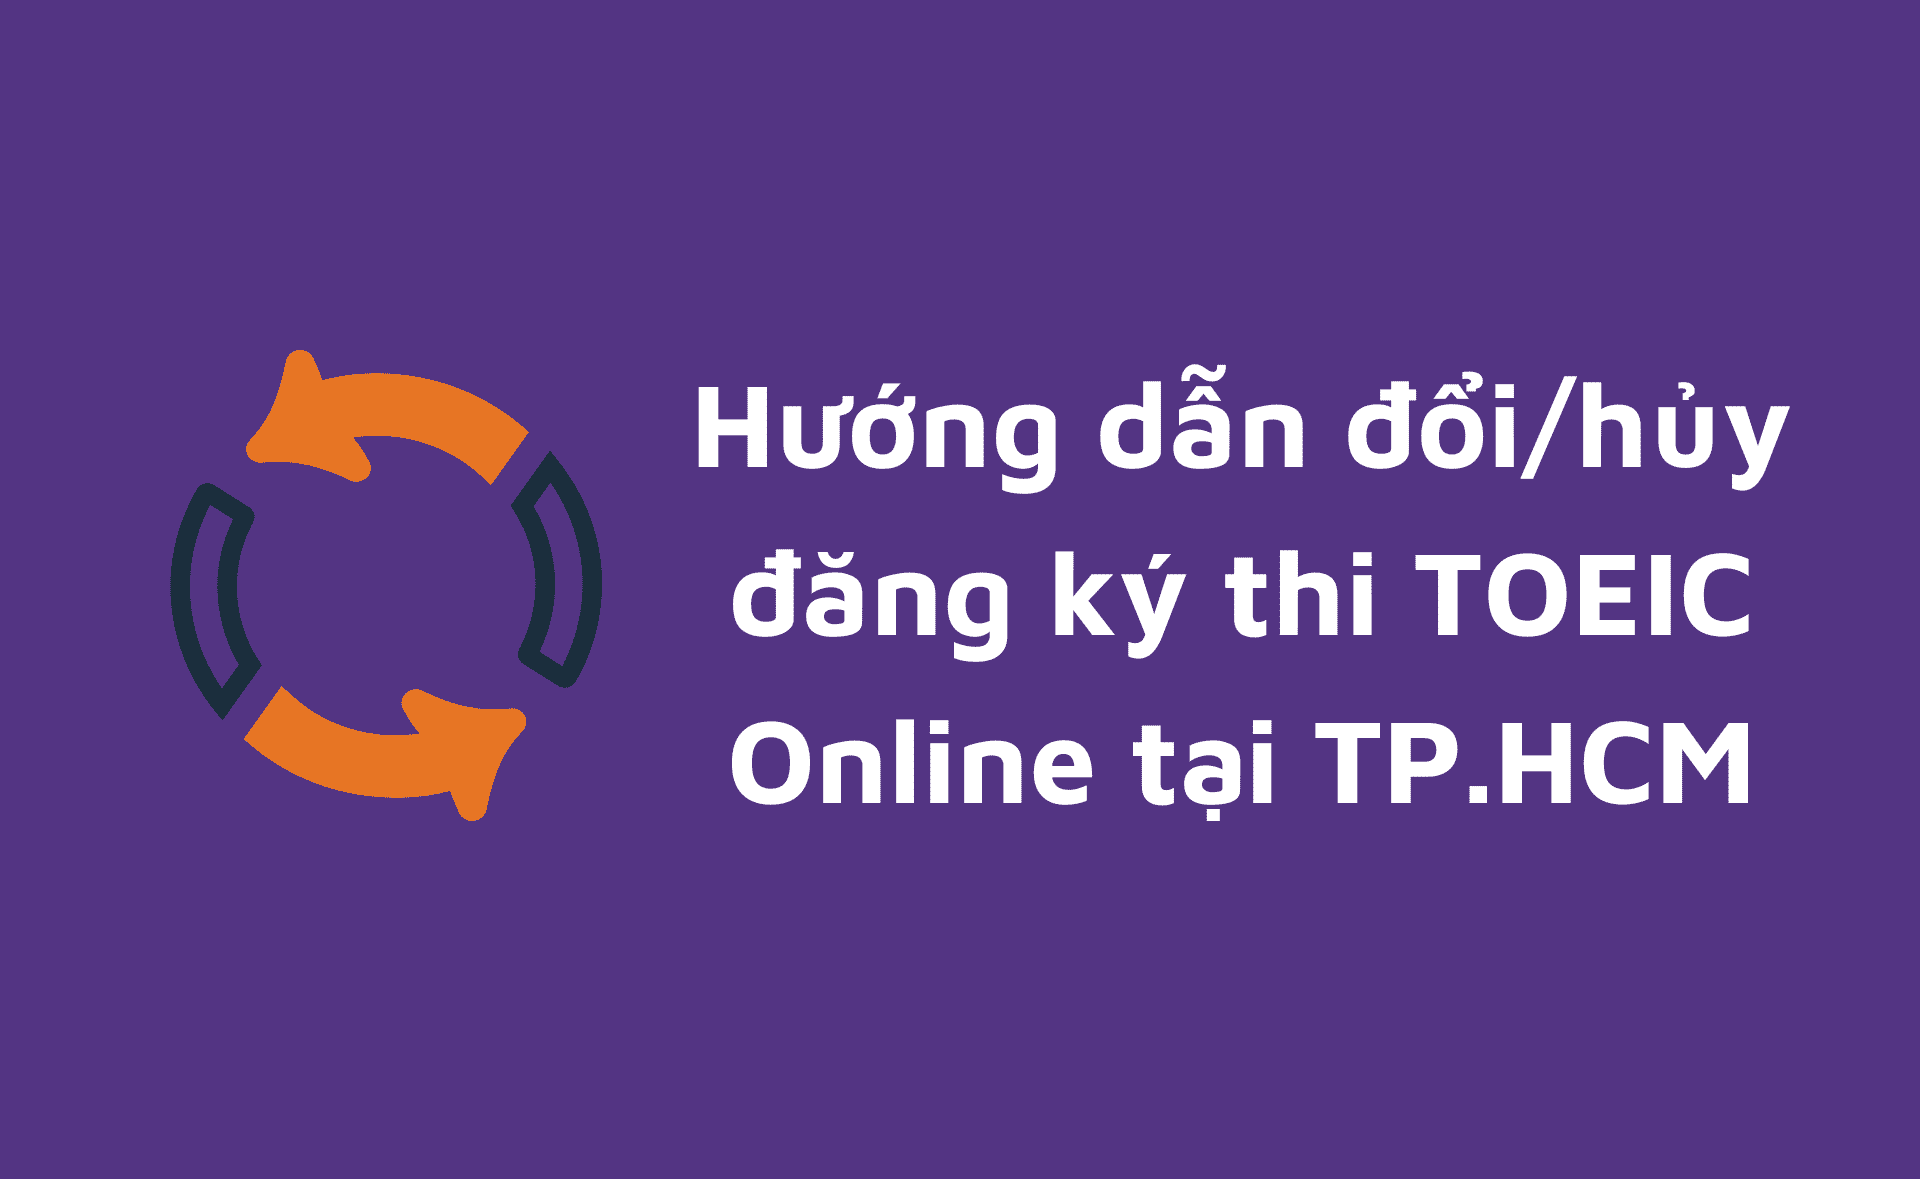 hủy đăng ký thi TOEIC Online tại TP. HCM